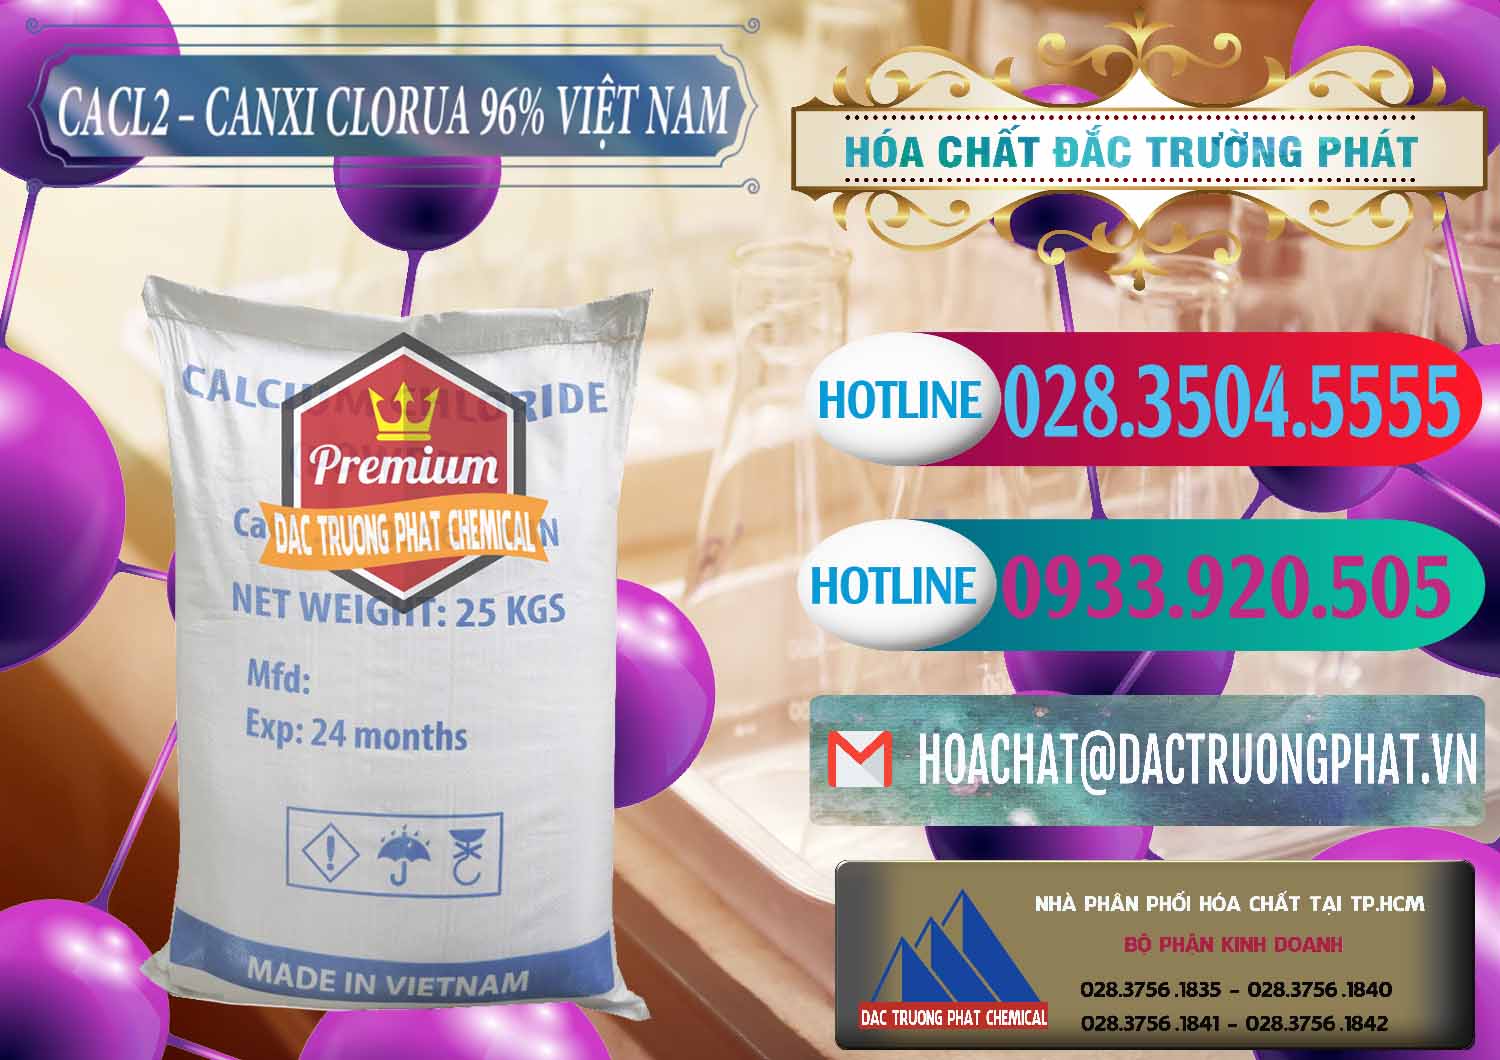 Chuyên bán ( cung cấp ) CaCl2 – Canxi Clorua 96% Việt Nam - 0236 - Cty chuyên phân phối _ cung ứng hóa chất tại TP.HCM - truongphat.vn